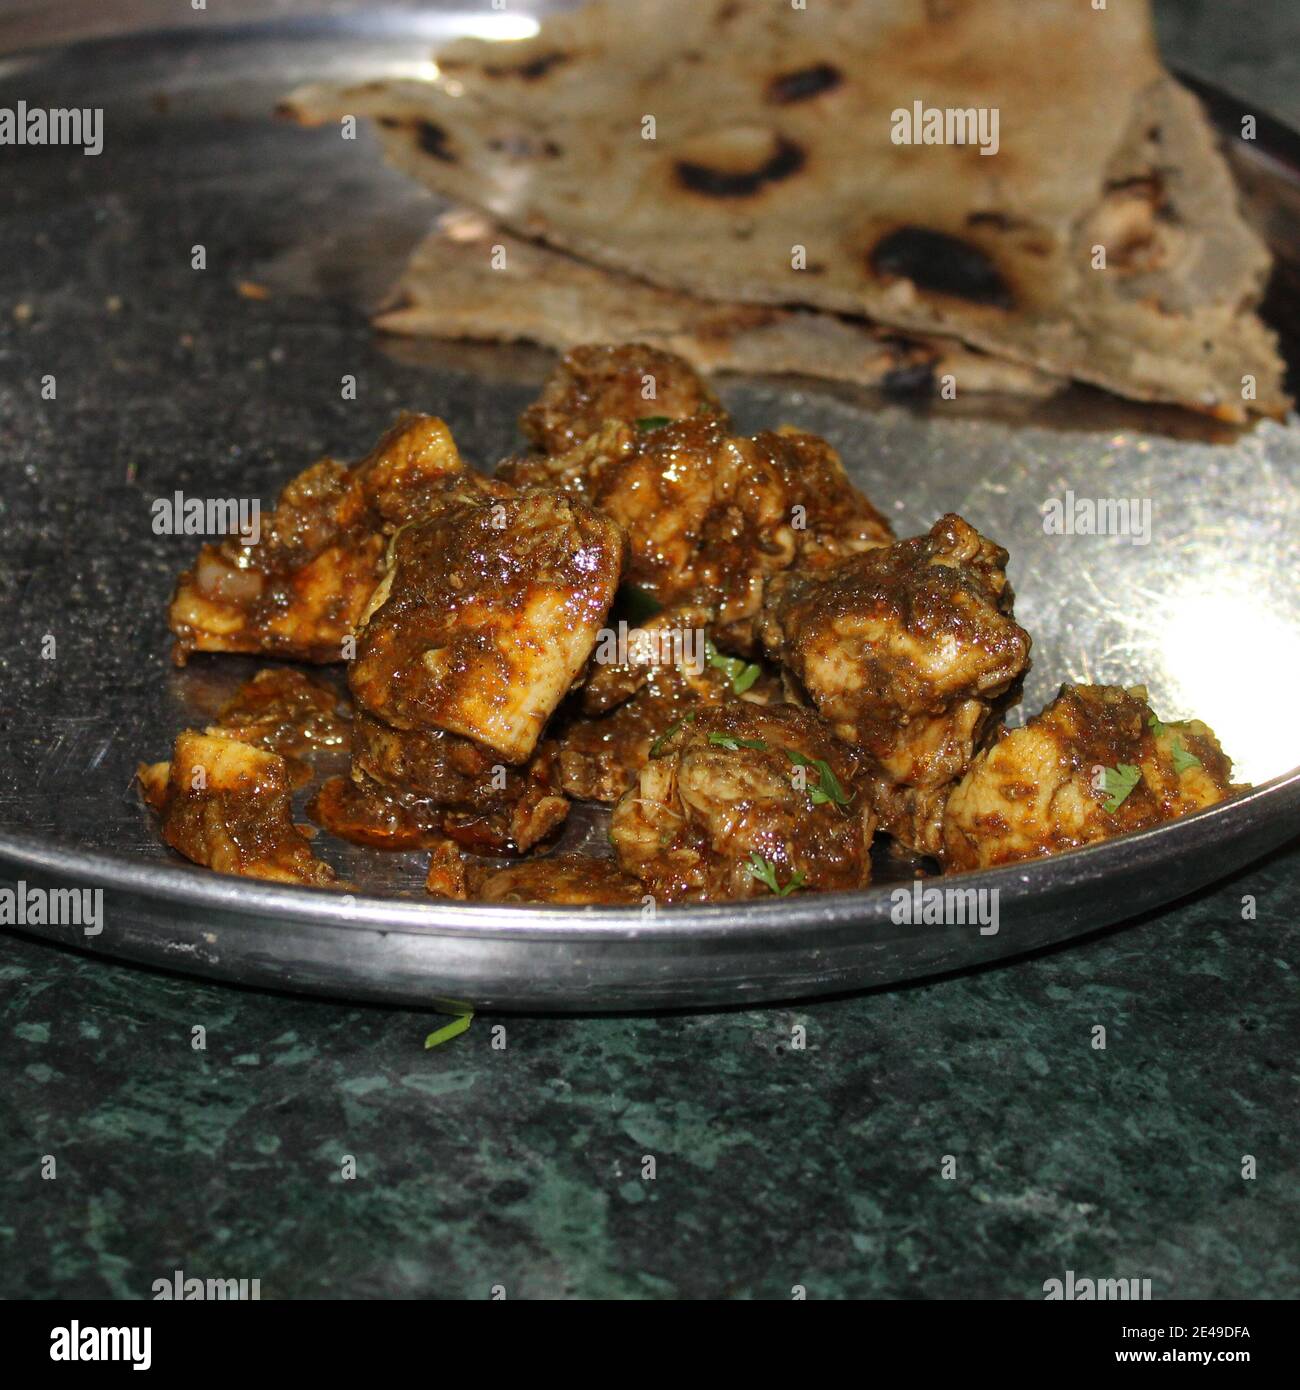 Chicken Handi maharashtrian from jagdamb hotel pune.kalya masalyache chicken. Stock Photo